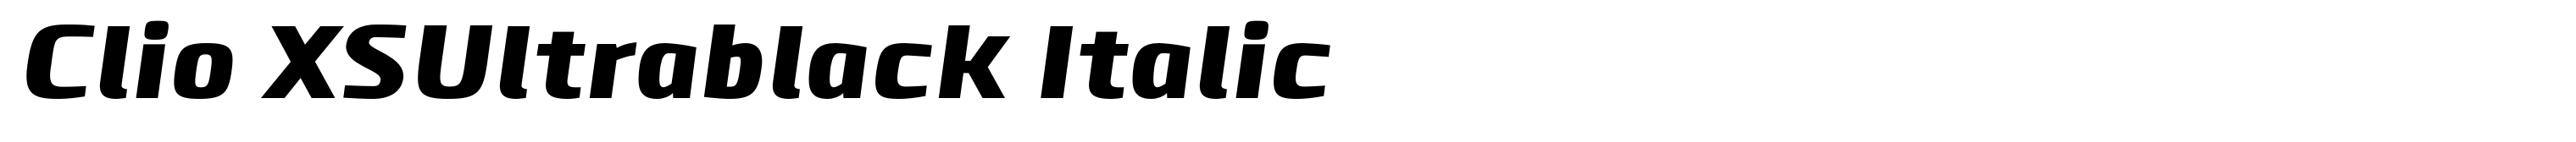 Clio XSUltrablack Italic